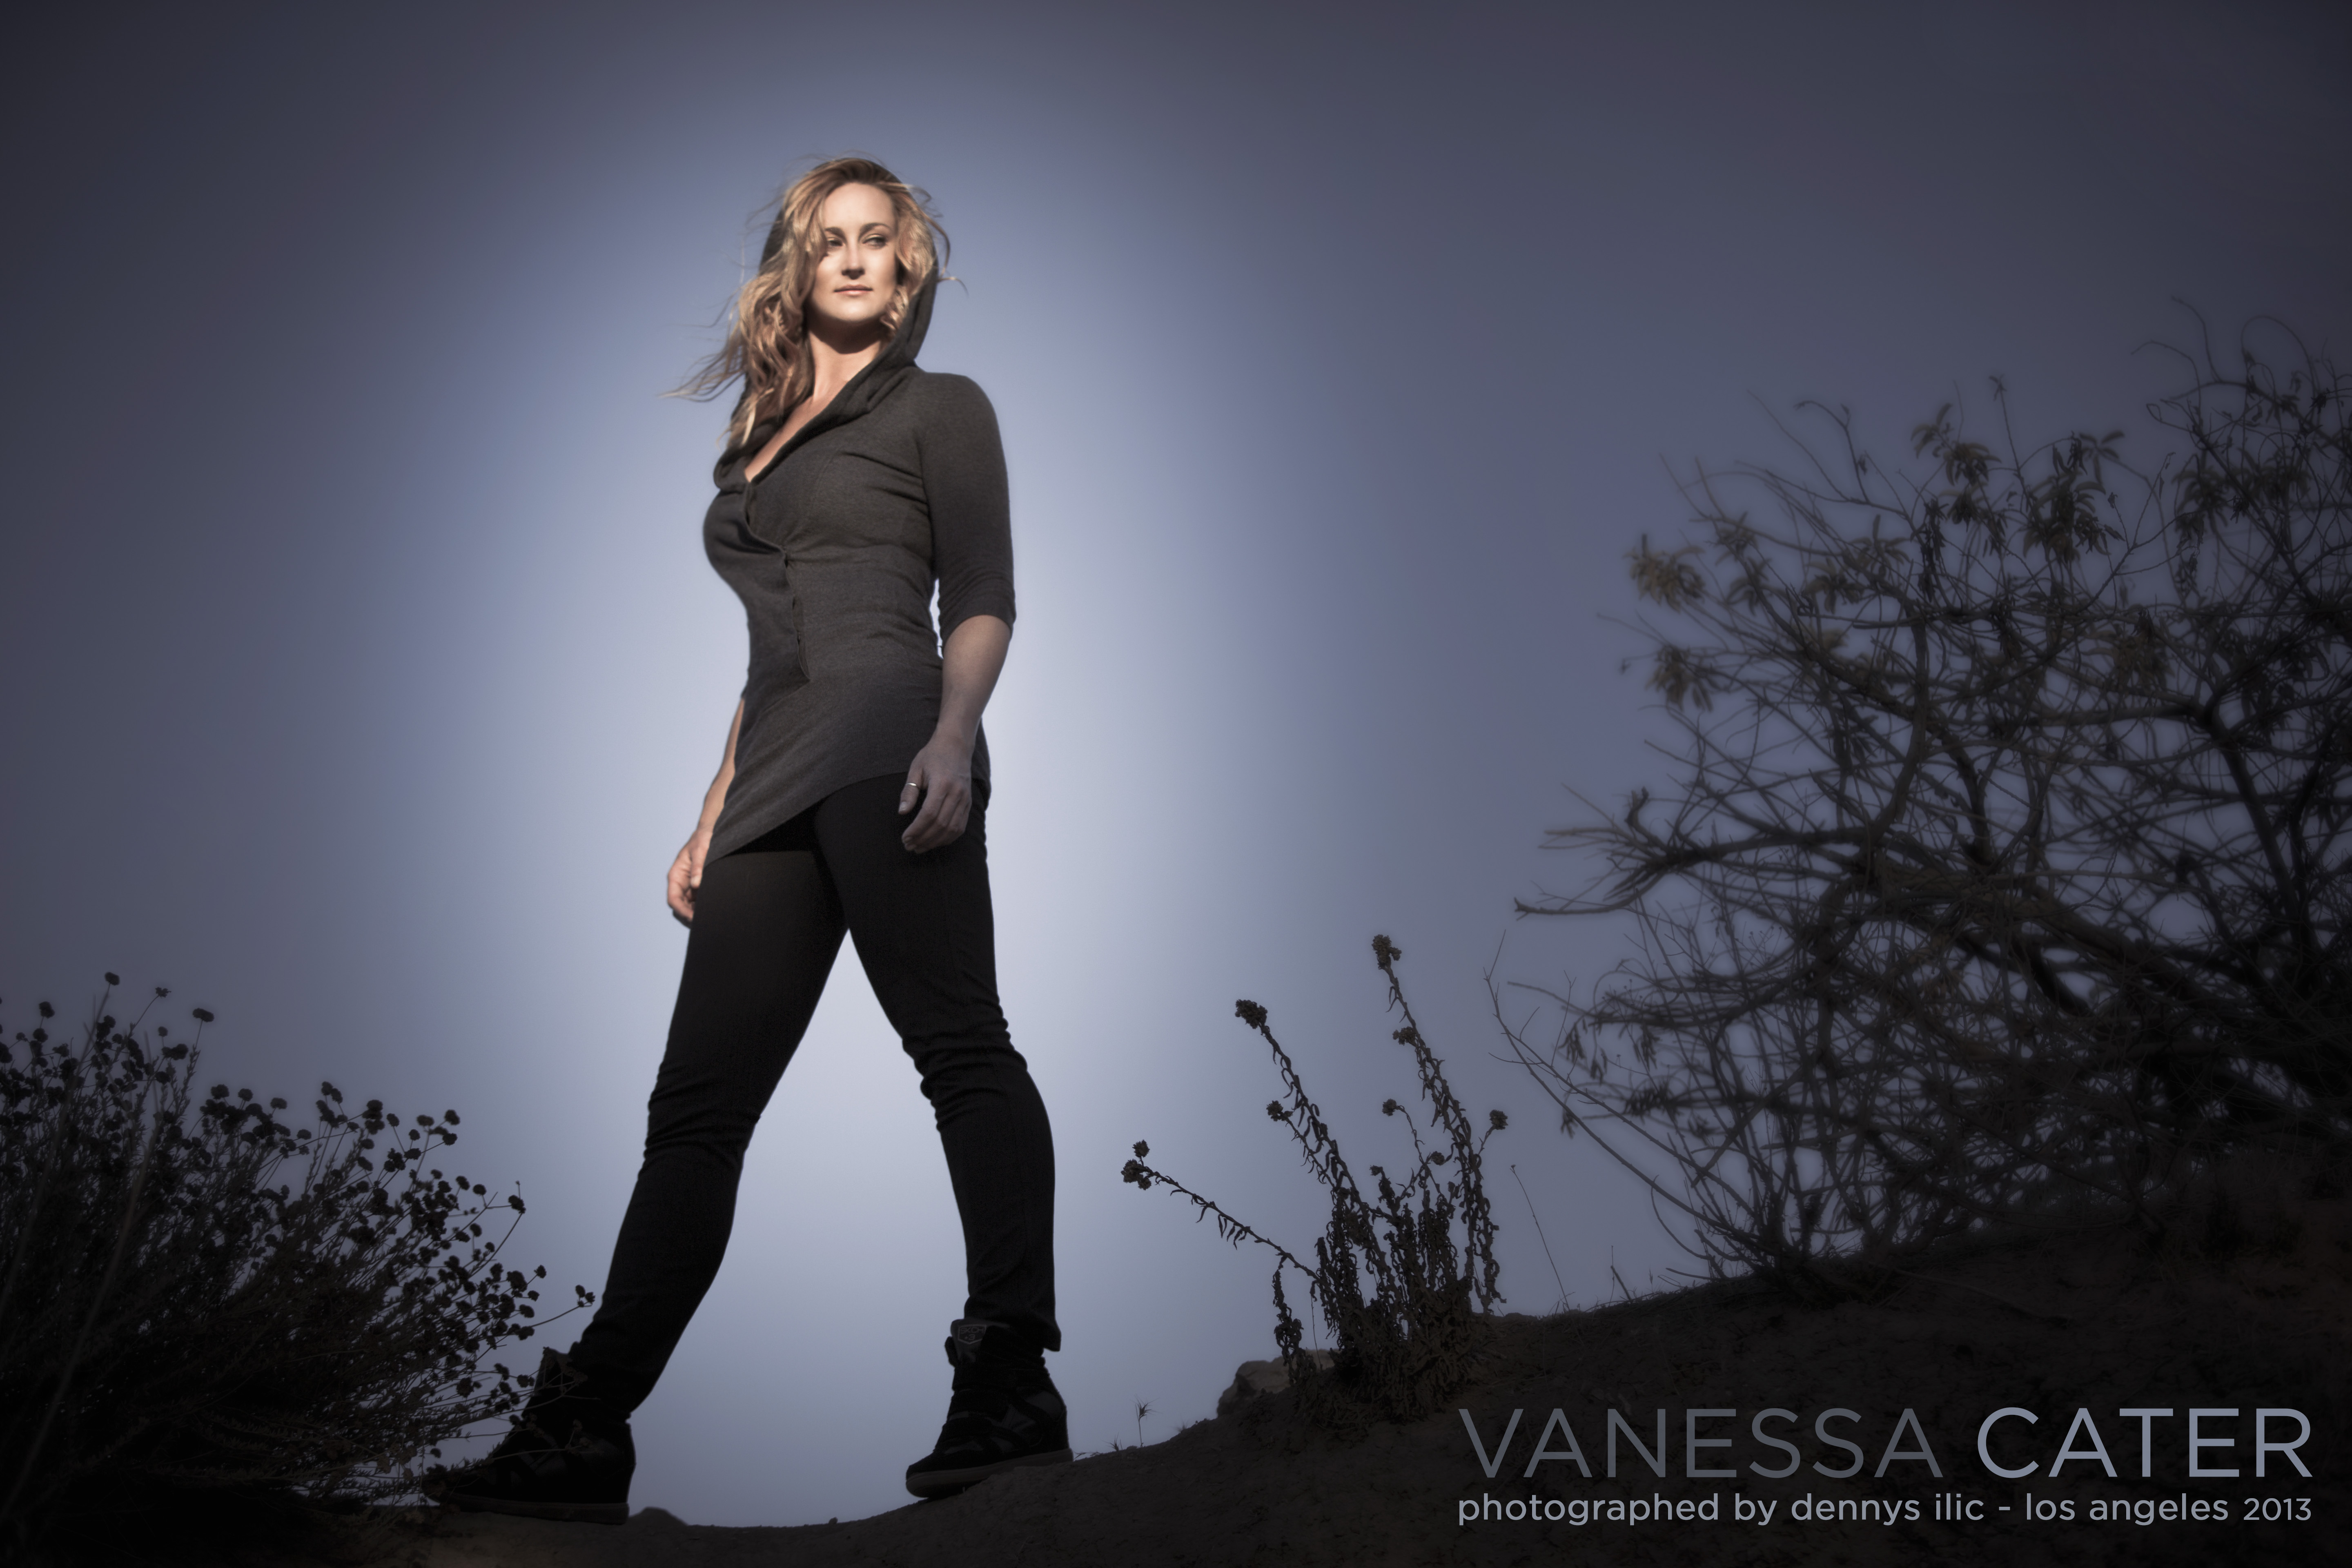 Vanessa Cater